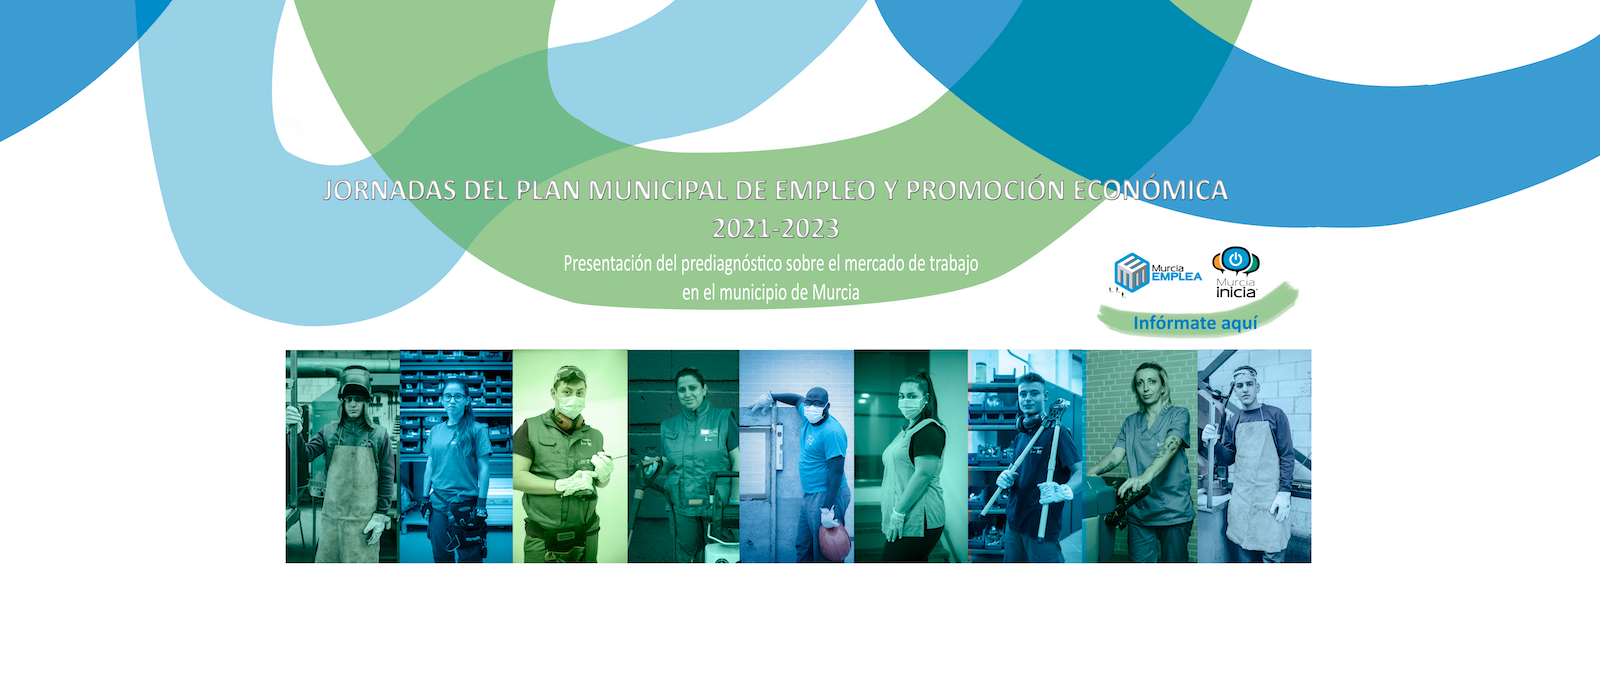 Jornadas del Plan Municipal de Empleo y Promoción Económica 2021-2023